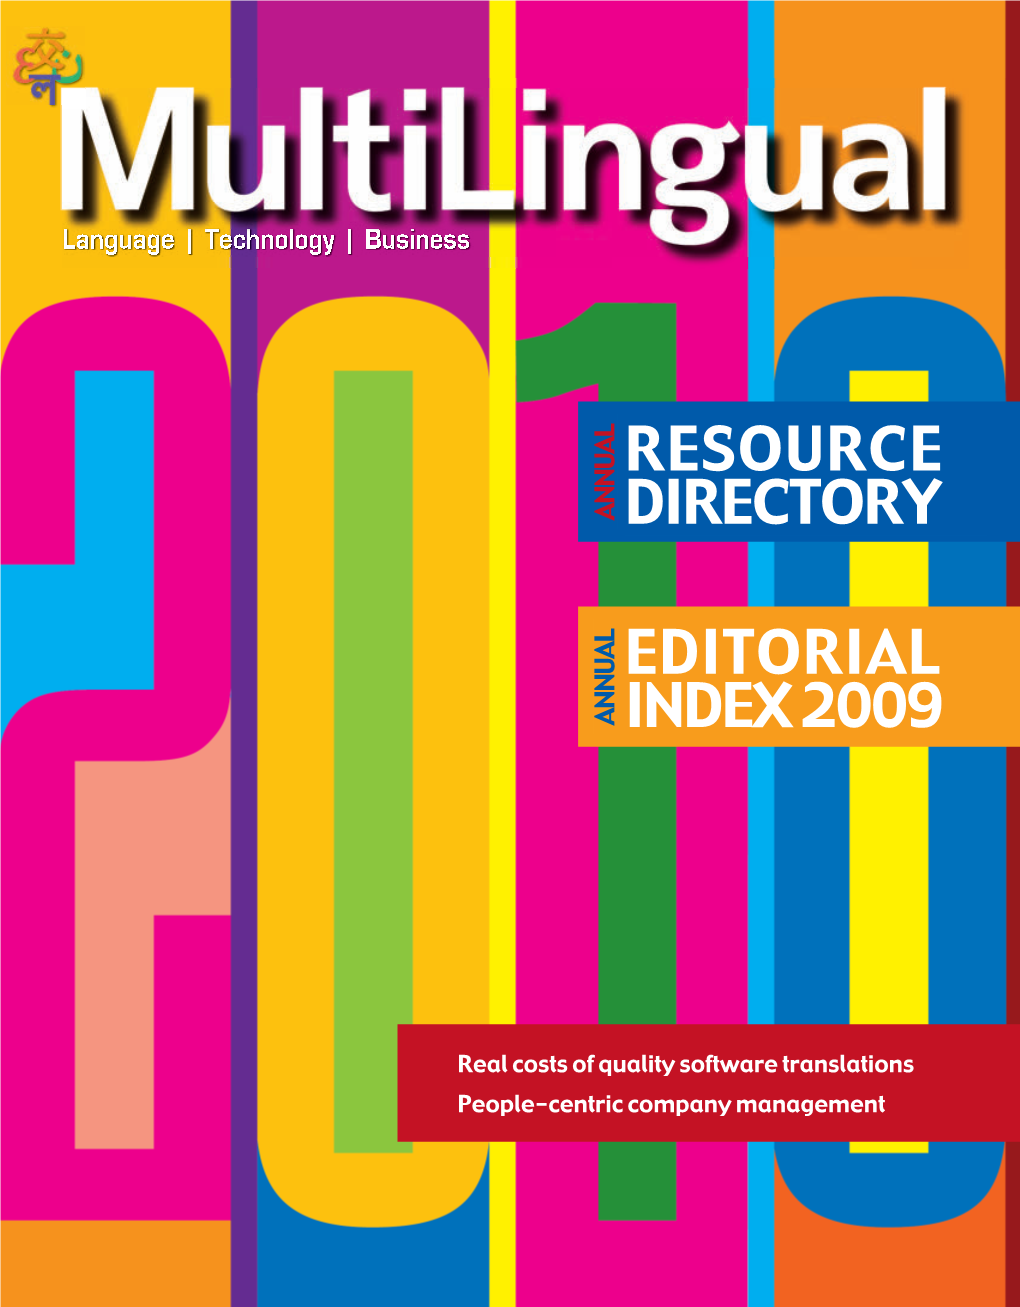 Multilingual -2010 Resource Directory & Editorial Index 2009